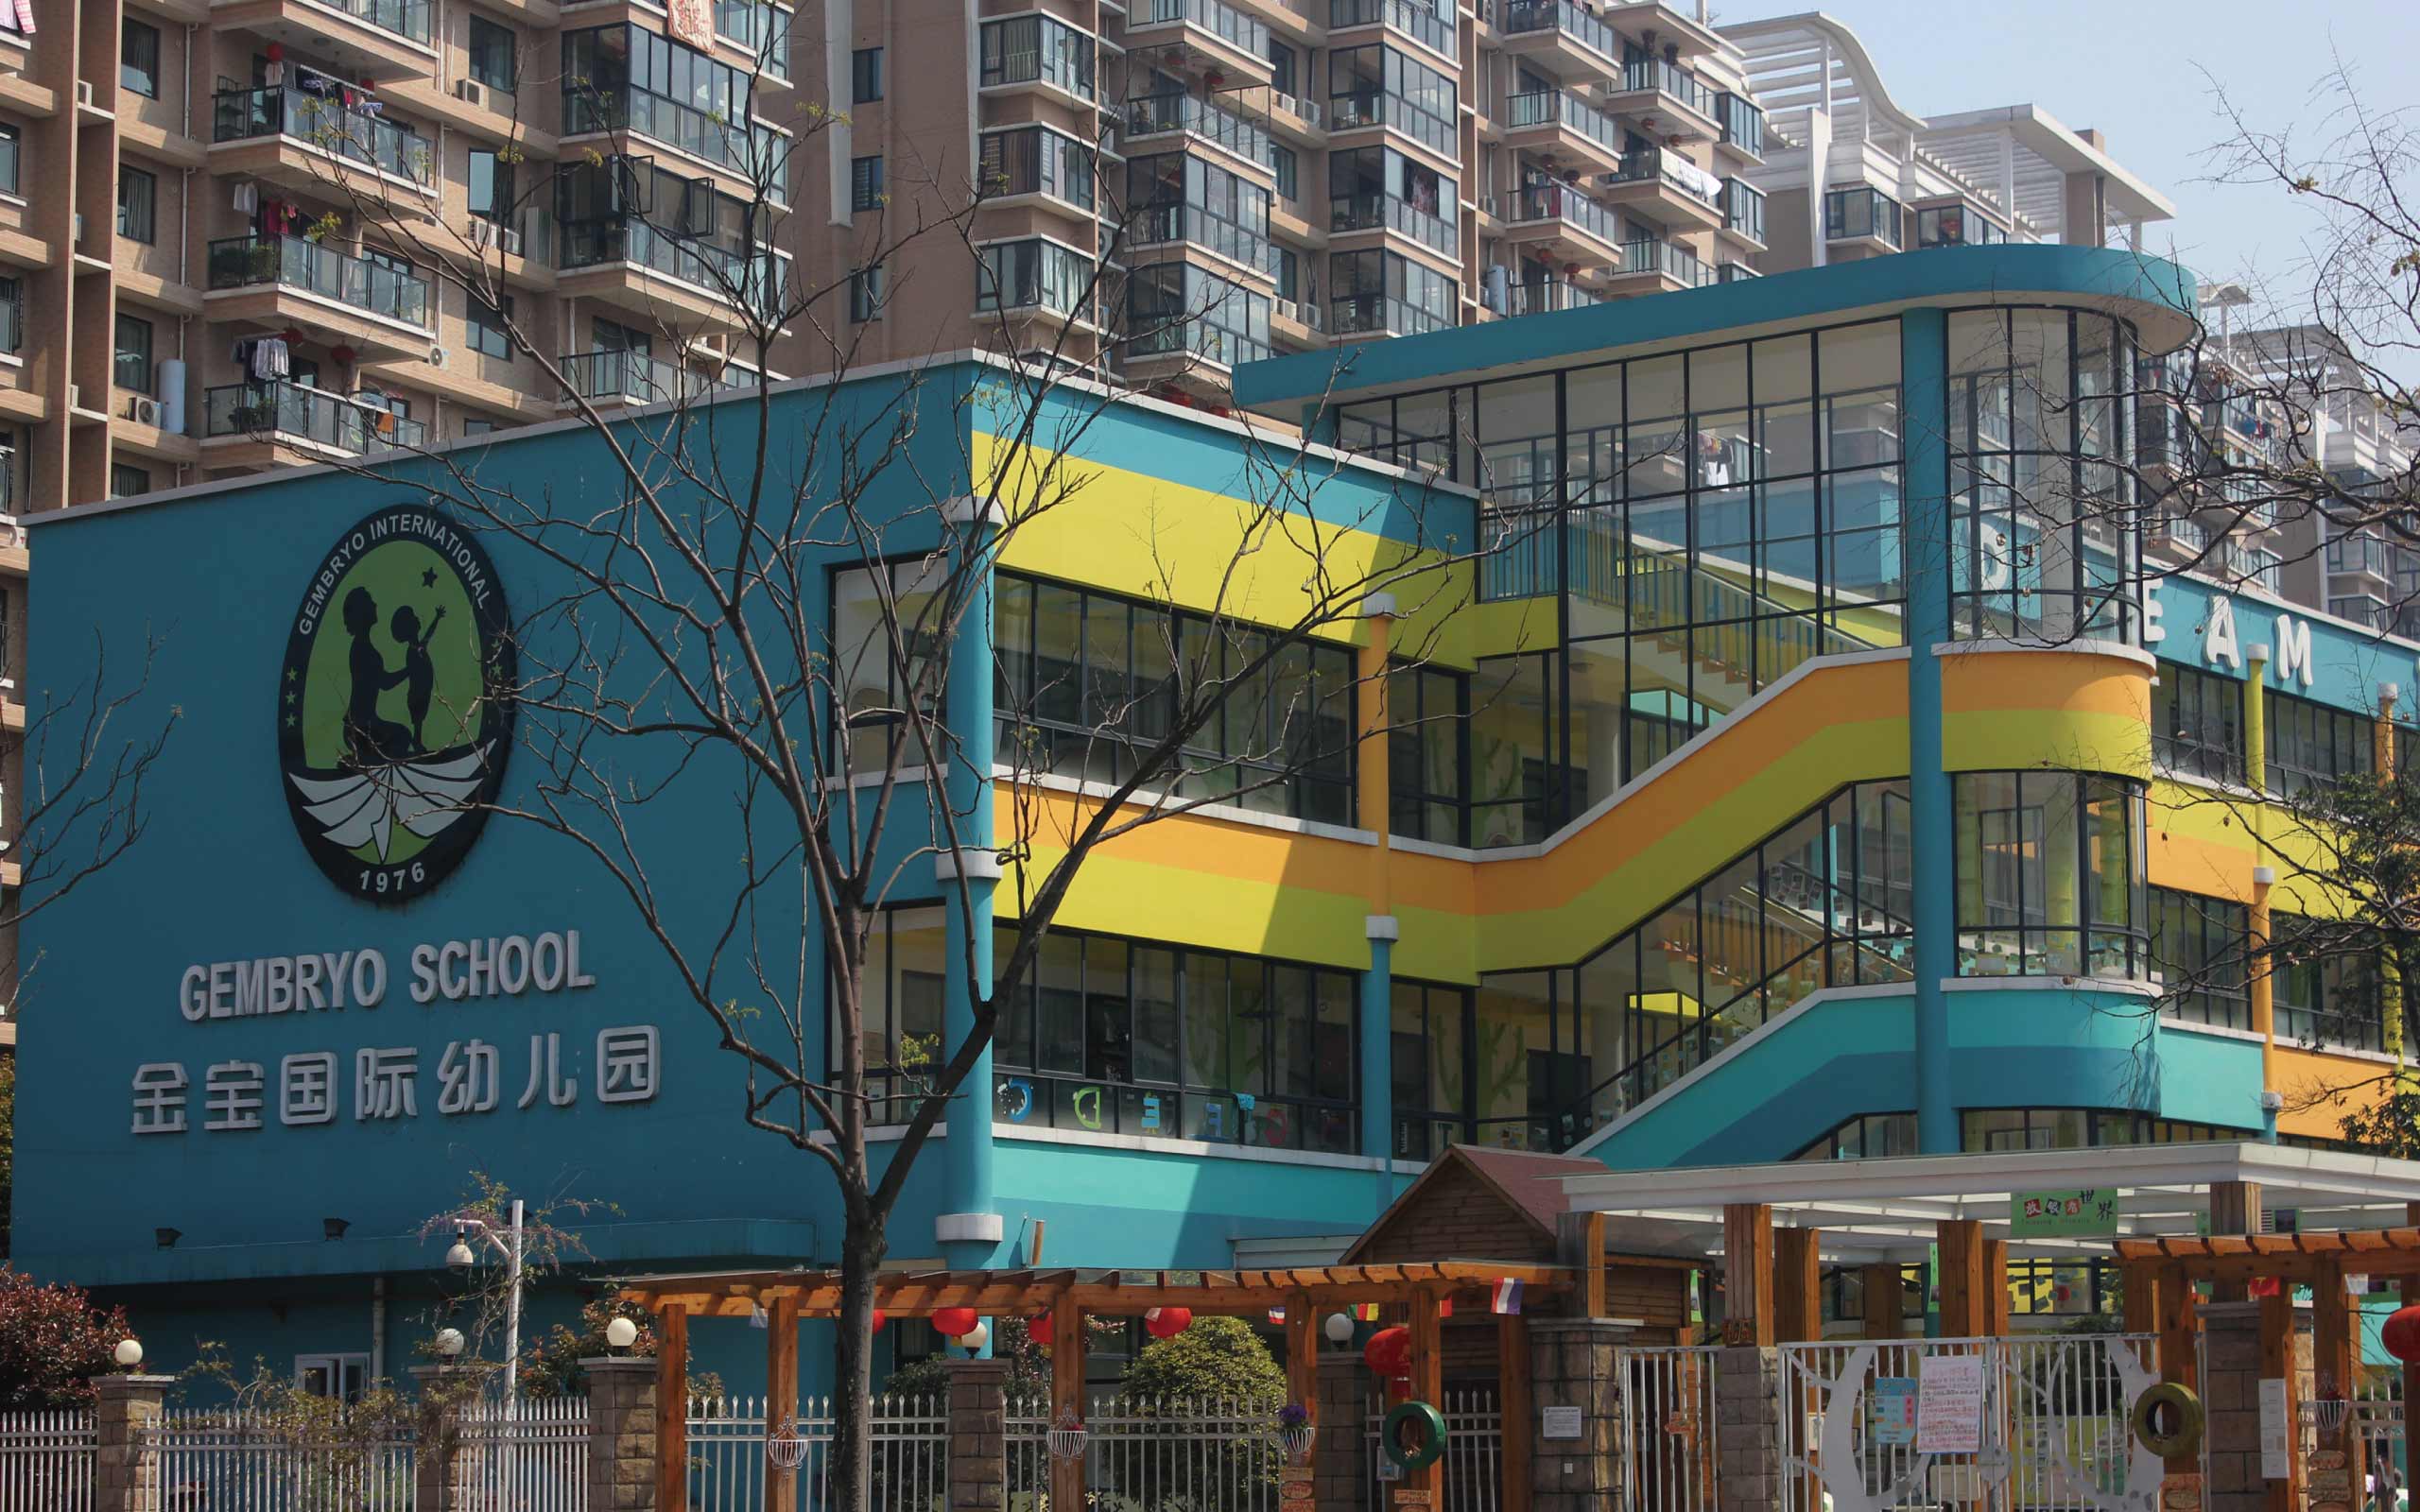 金宝国际幼儿园为贝壳金宝旗下学前教育品牌,目前在北京,上海,广州等